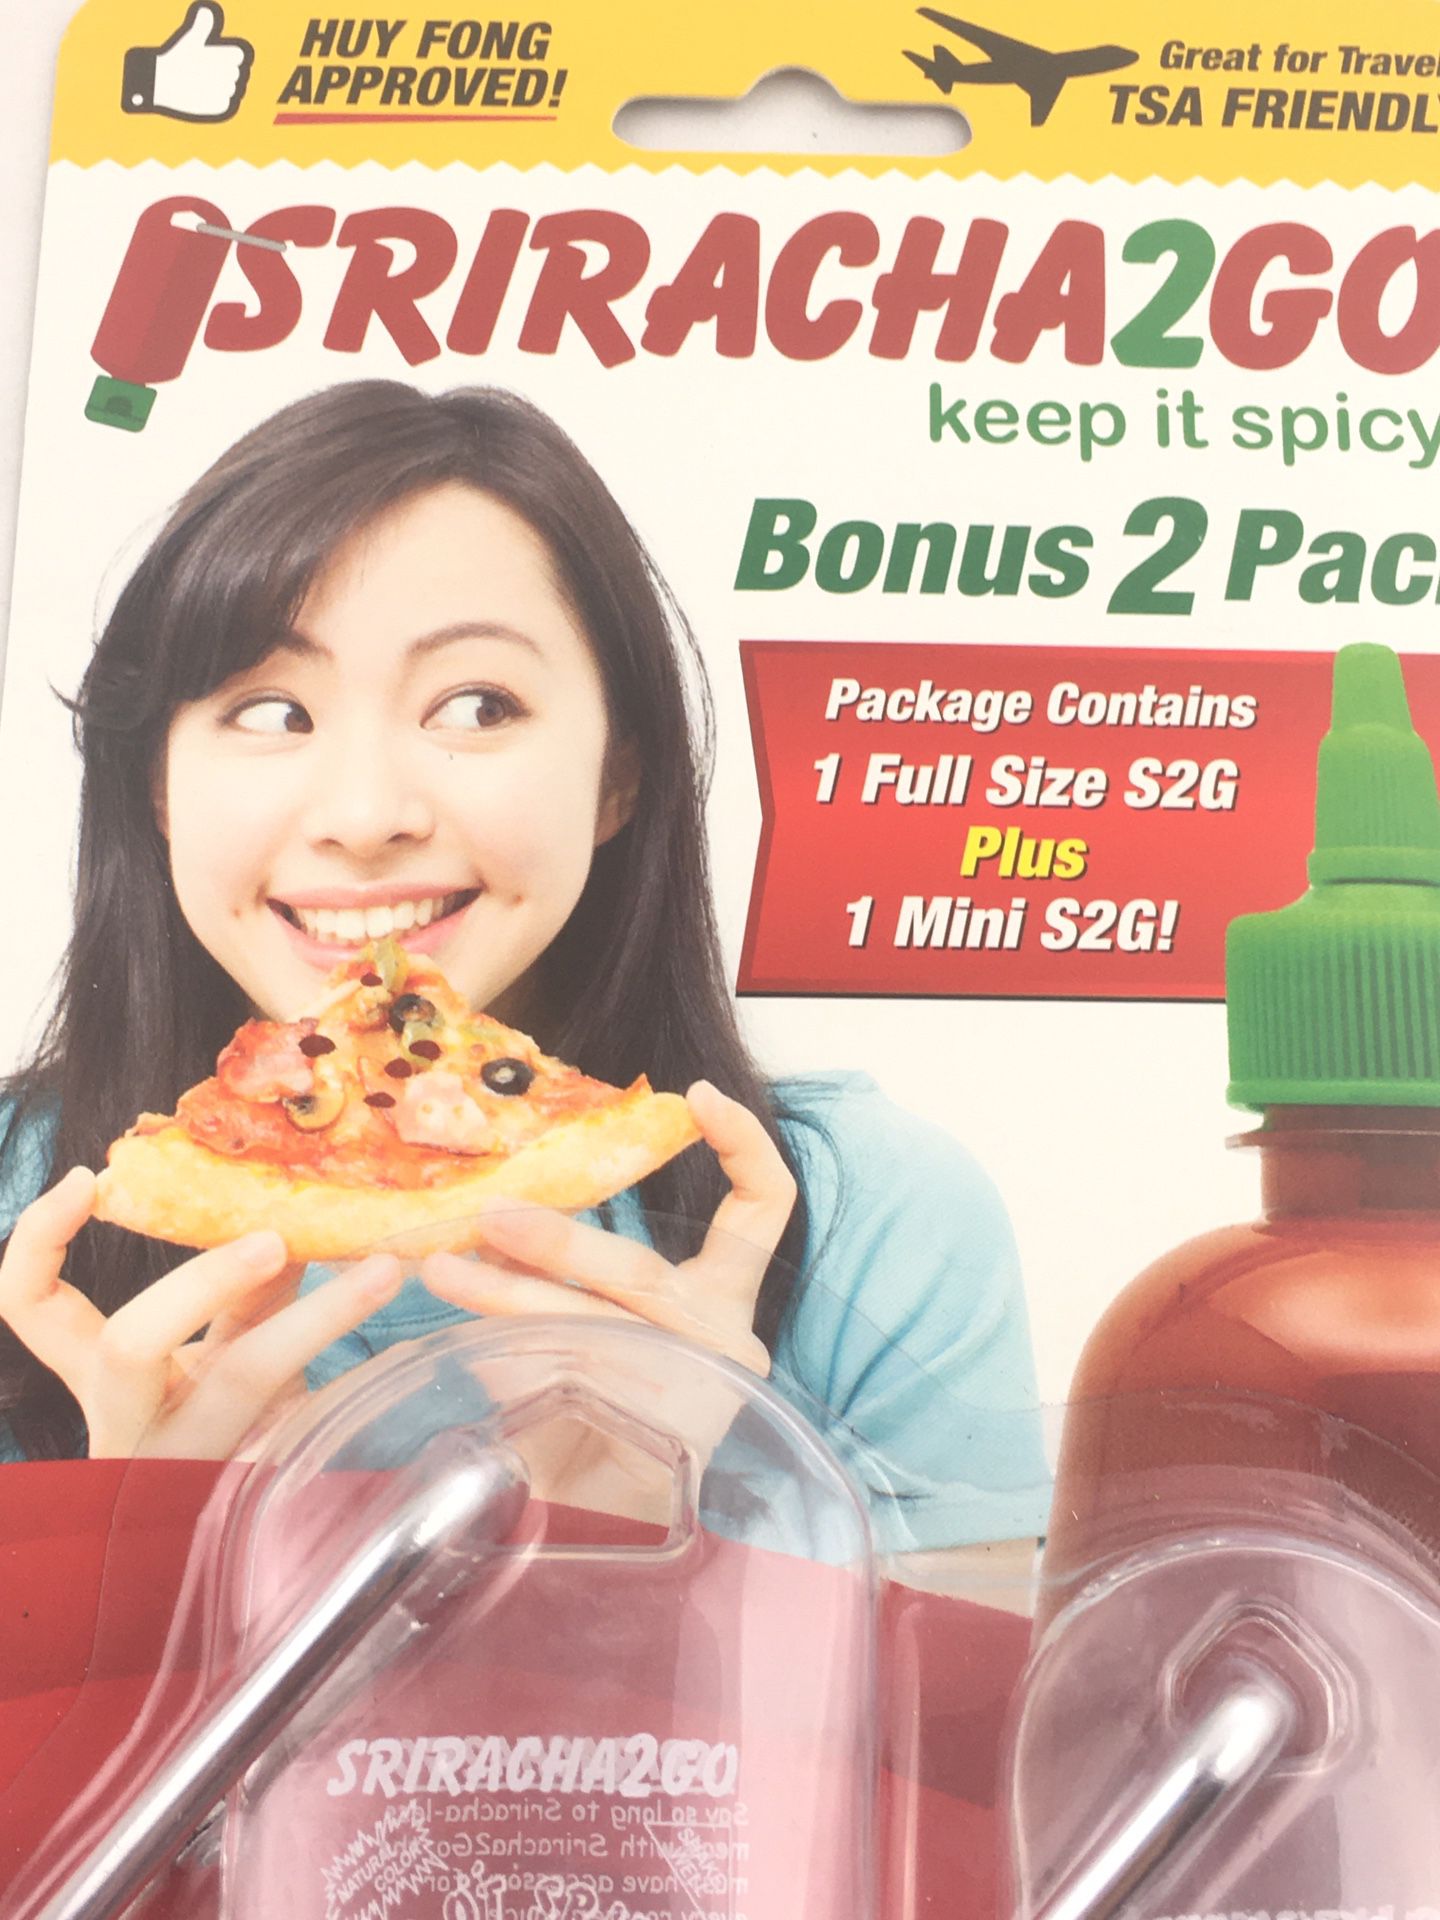 Sriracha 2 Go